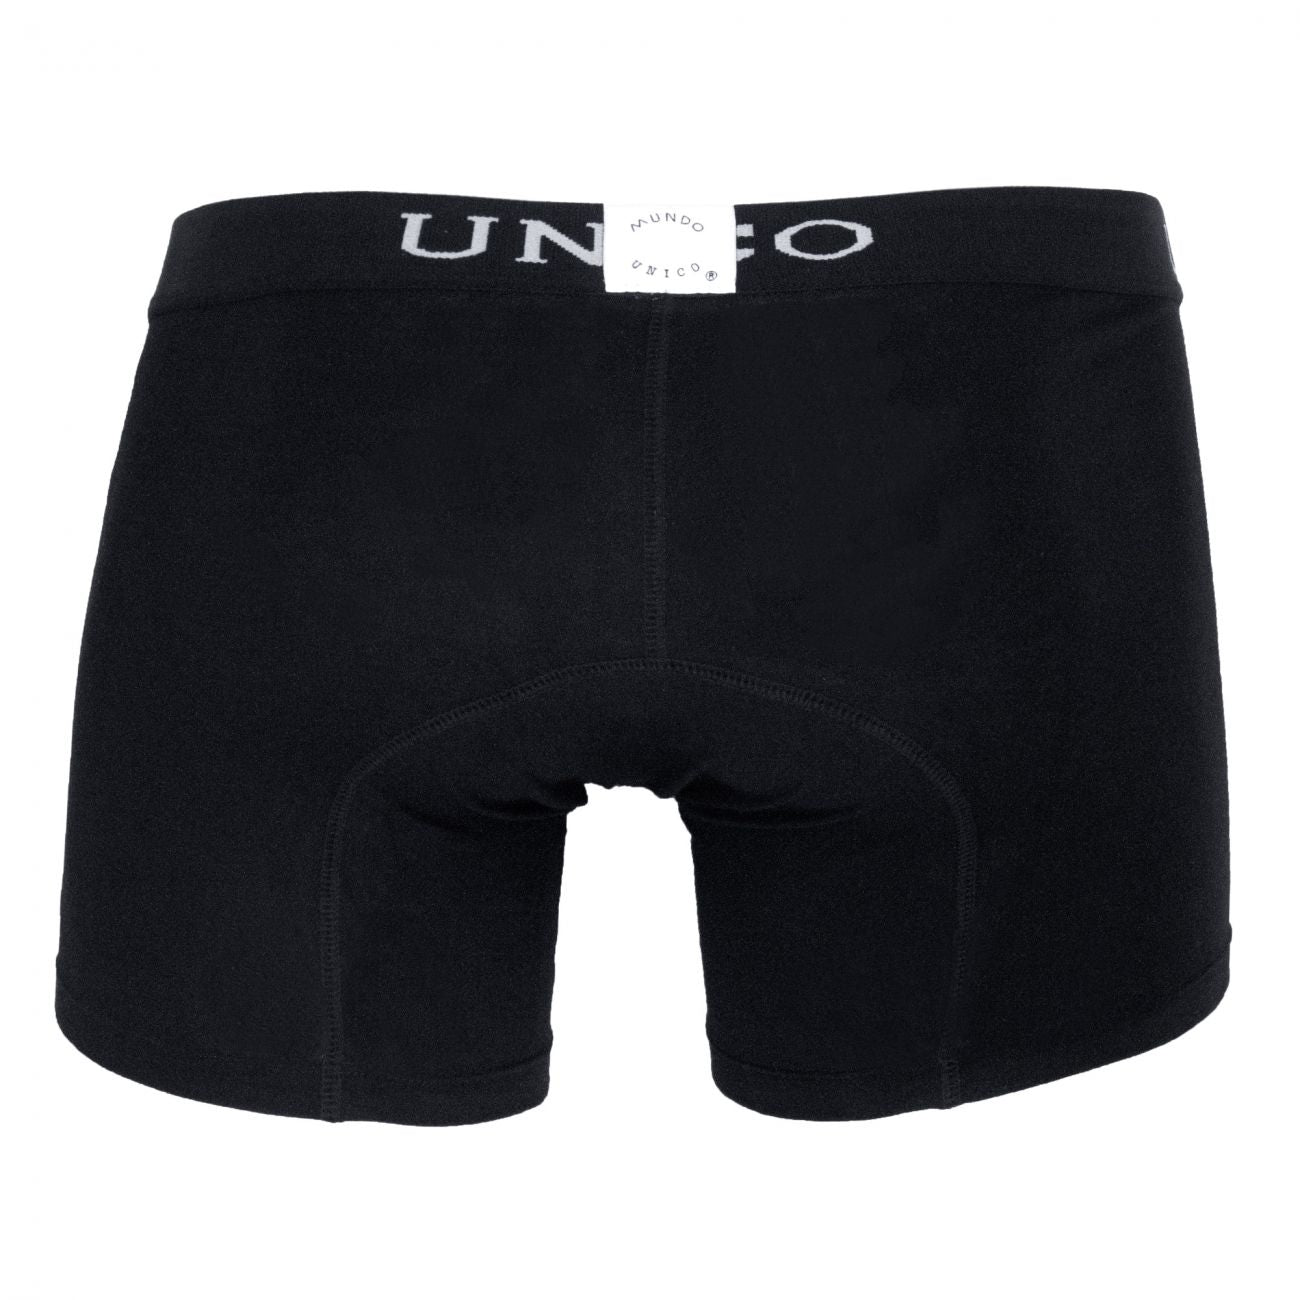 Unico 9610090199 Boxer Briefs Intenso Black